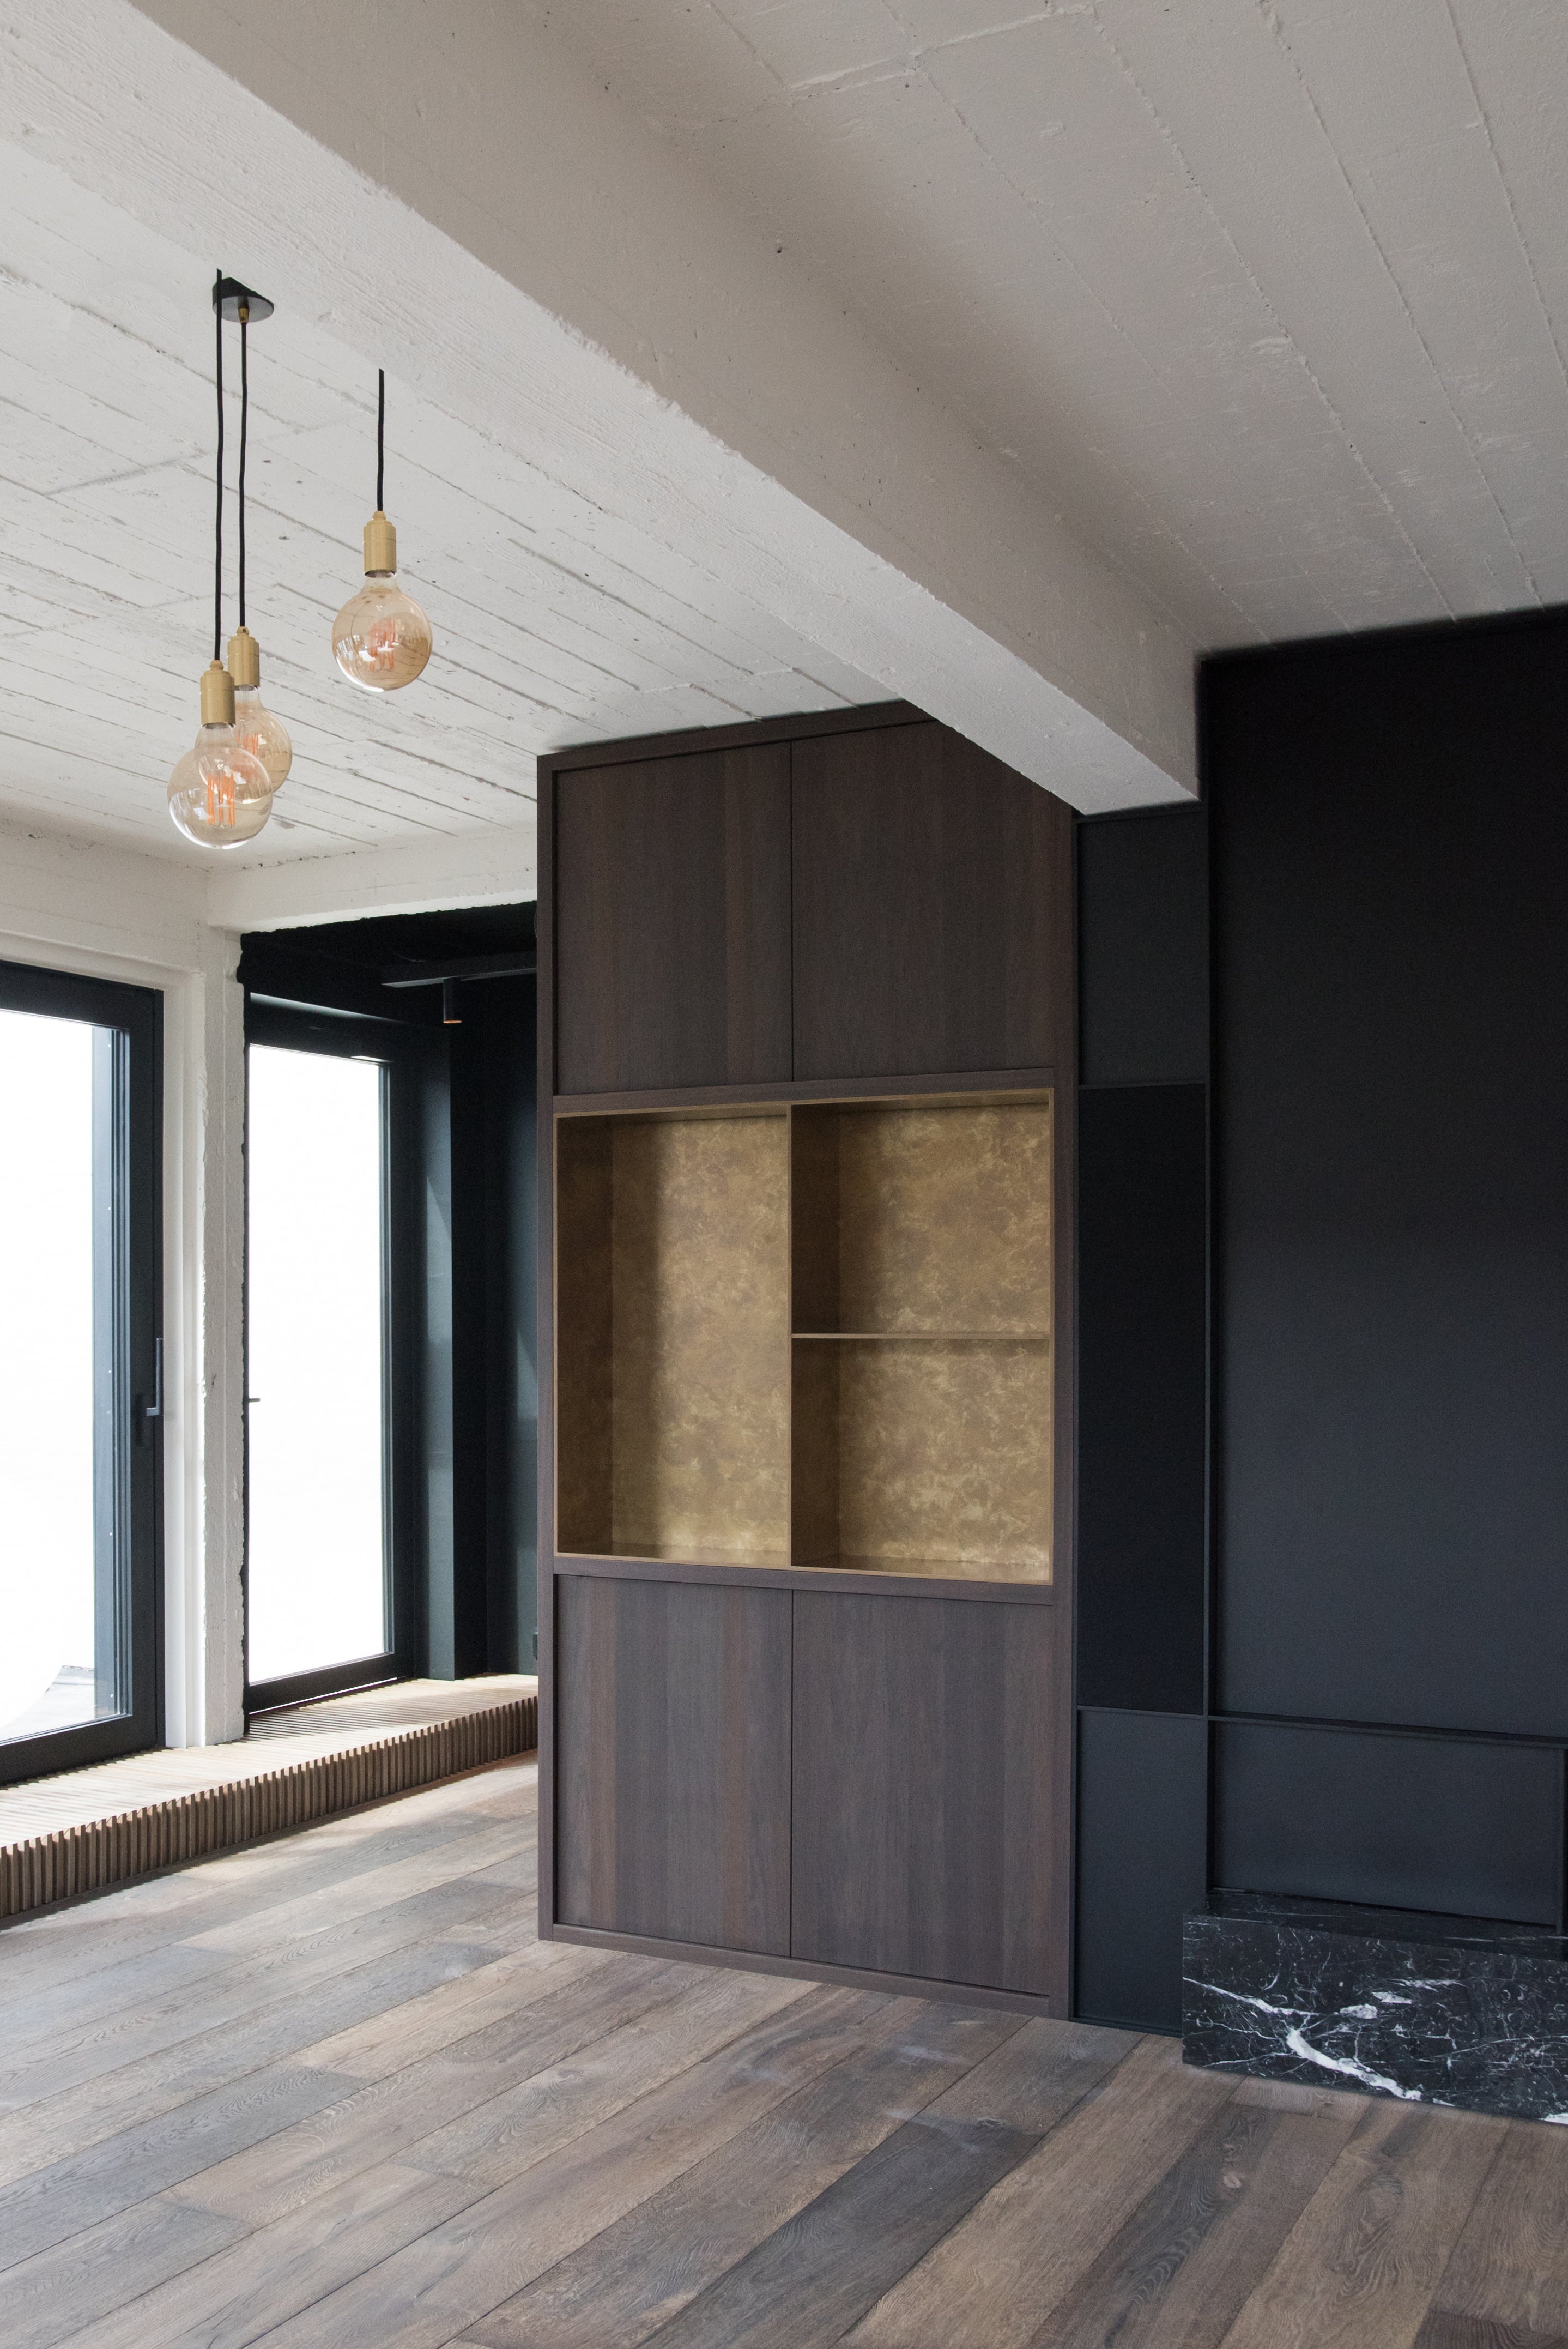 Querkus - oak - oak floor - veneer floor - prefinished panels - dark cabinets - office - veneer - read-to-use panels